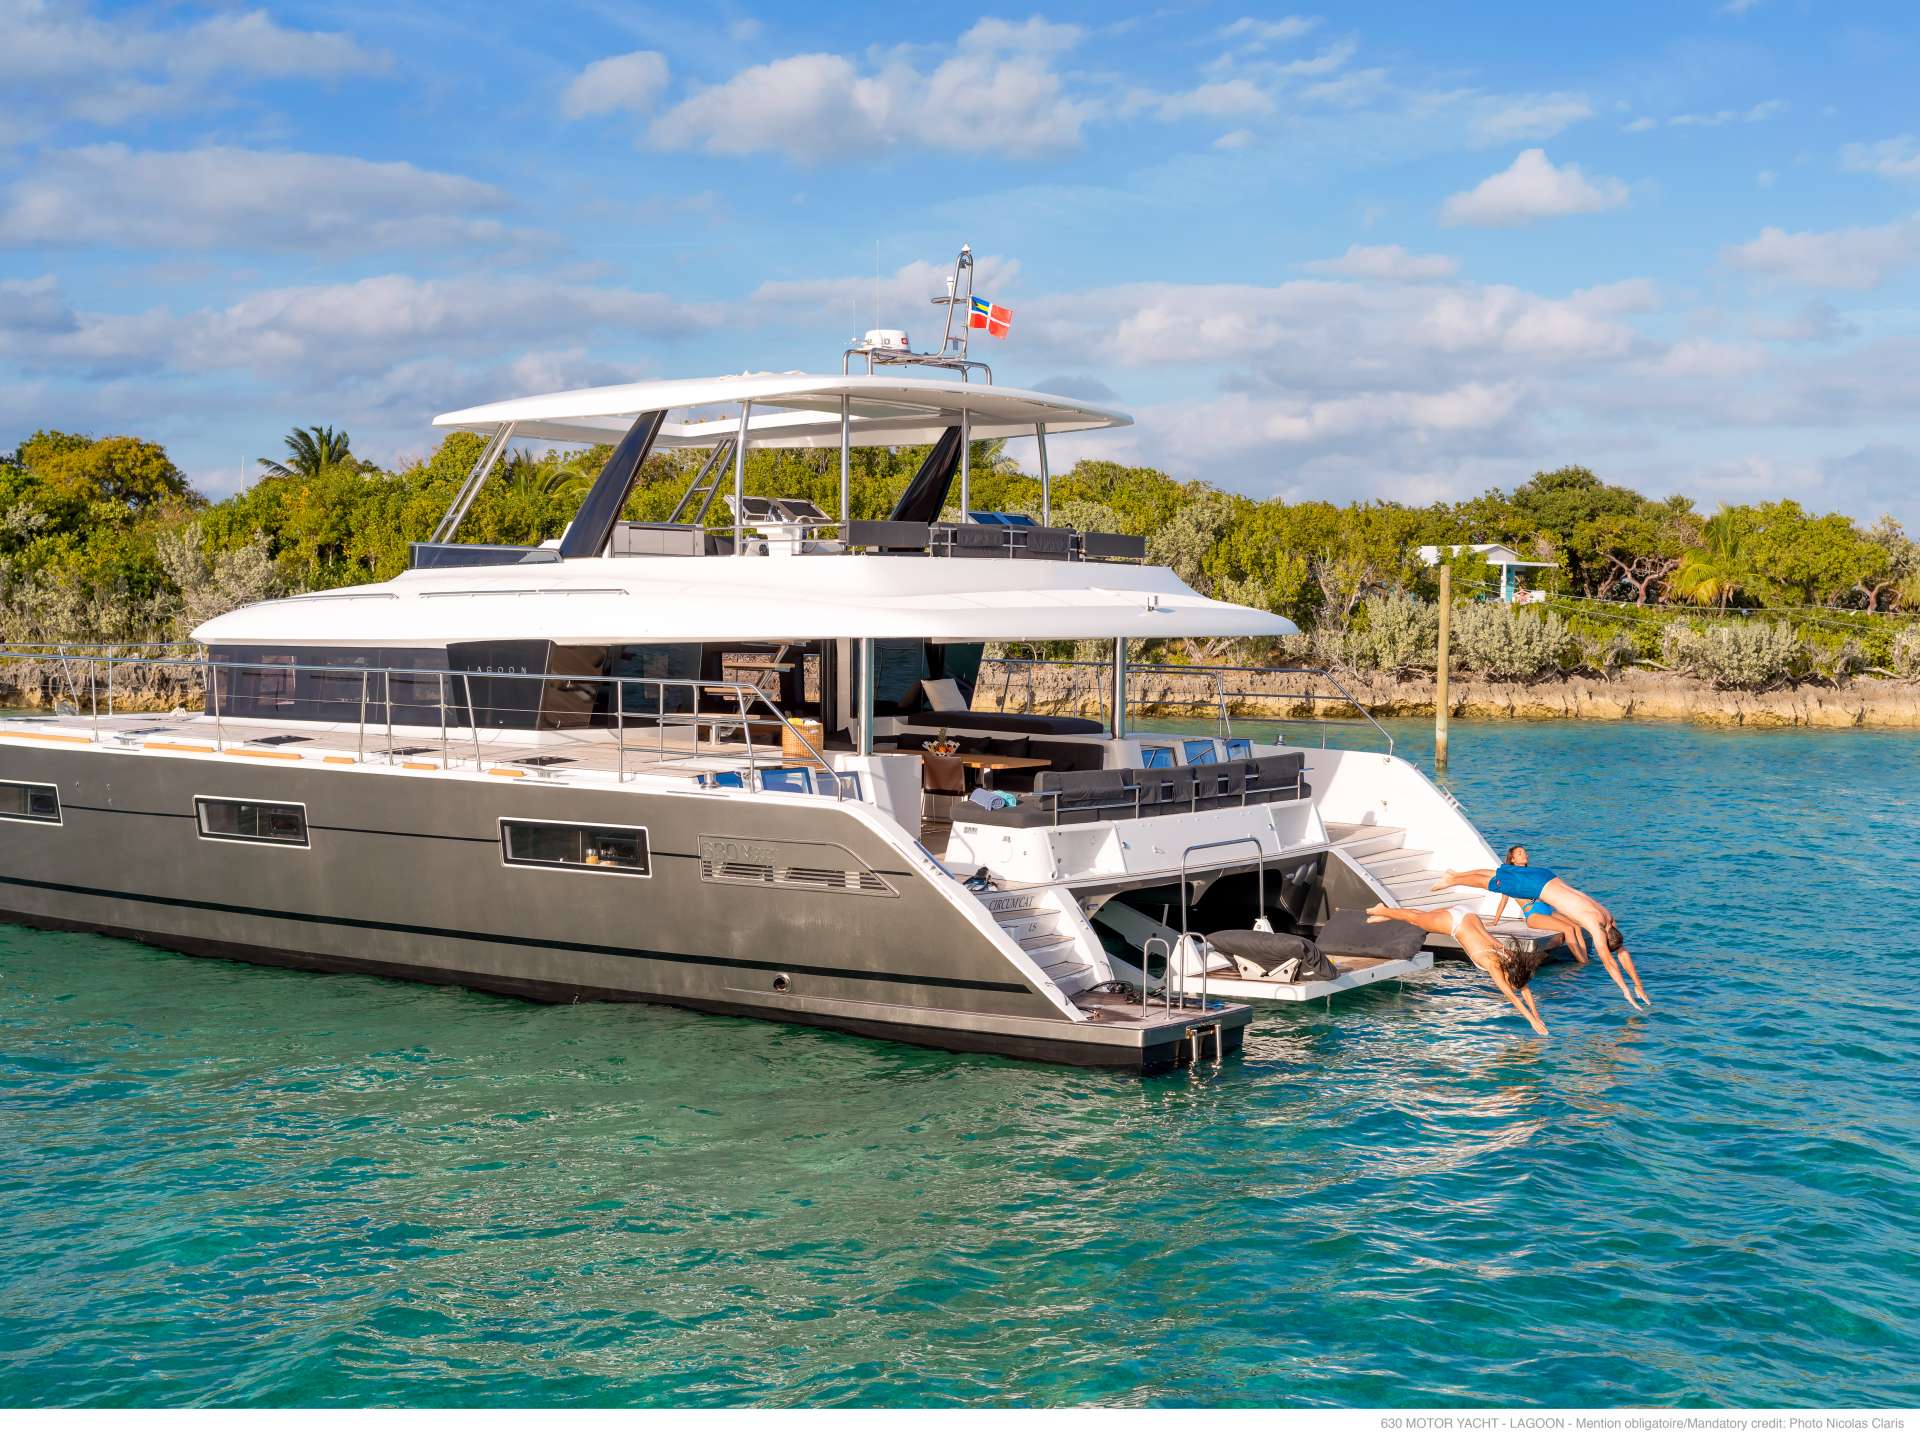 galux one - Yacht Charter Kassandra & Boat hire in Greece 4